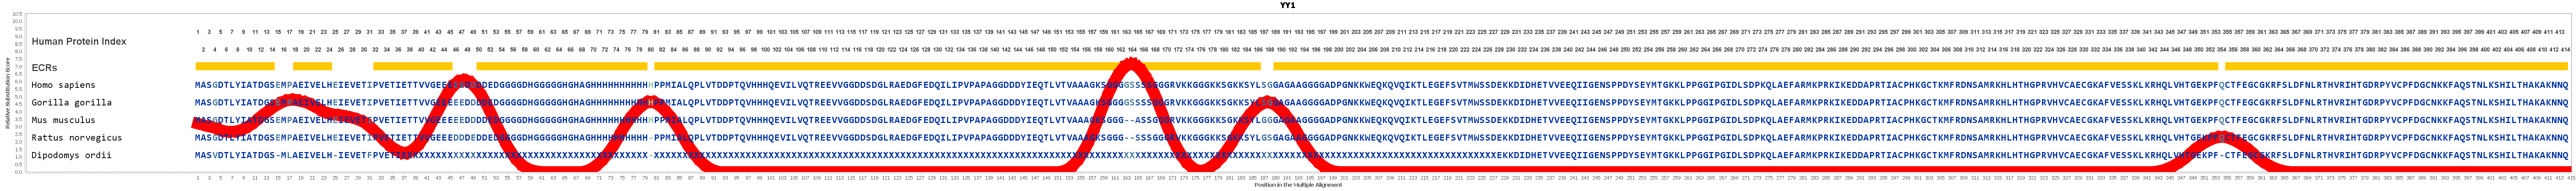 Yy1 Gene Genecards Tyy1 Protein Tyy1 Antibody - rank names roblox amino